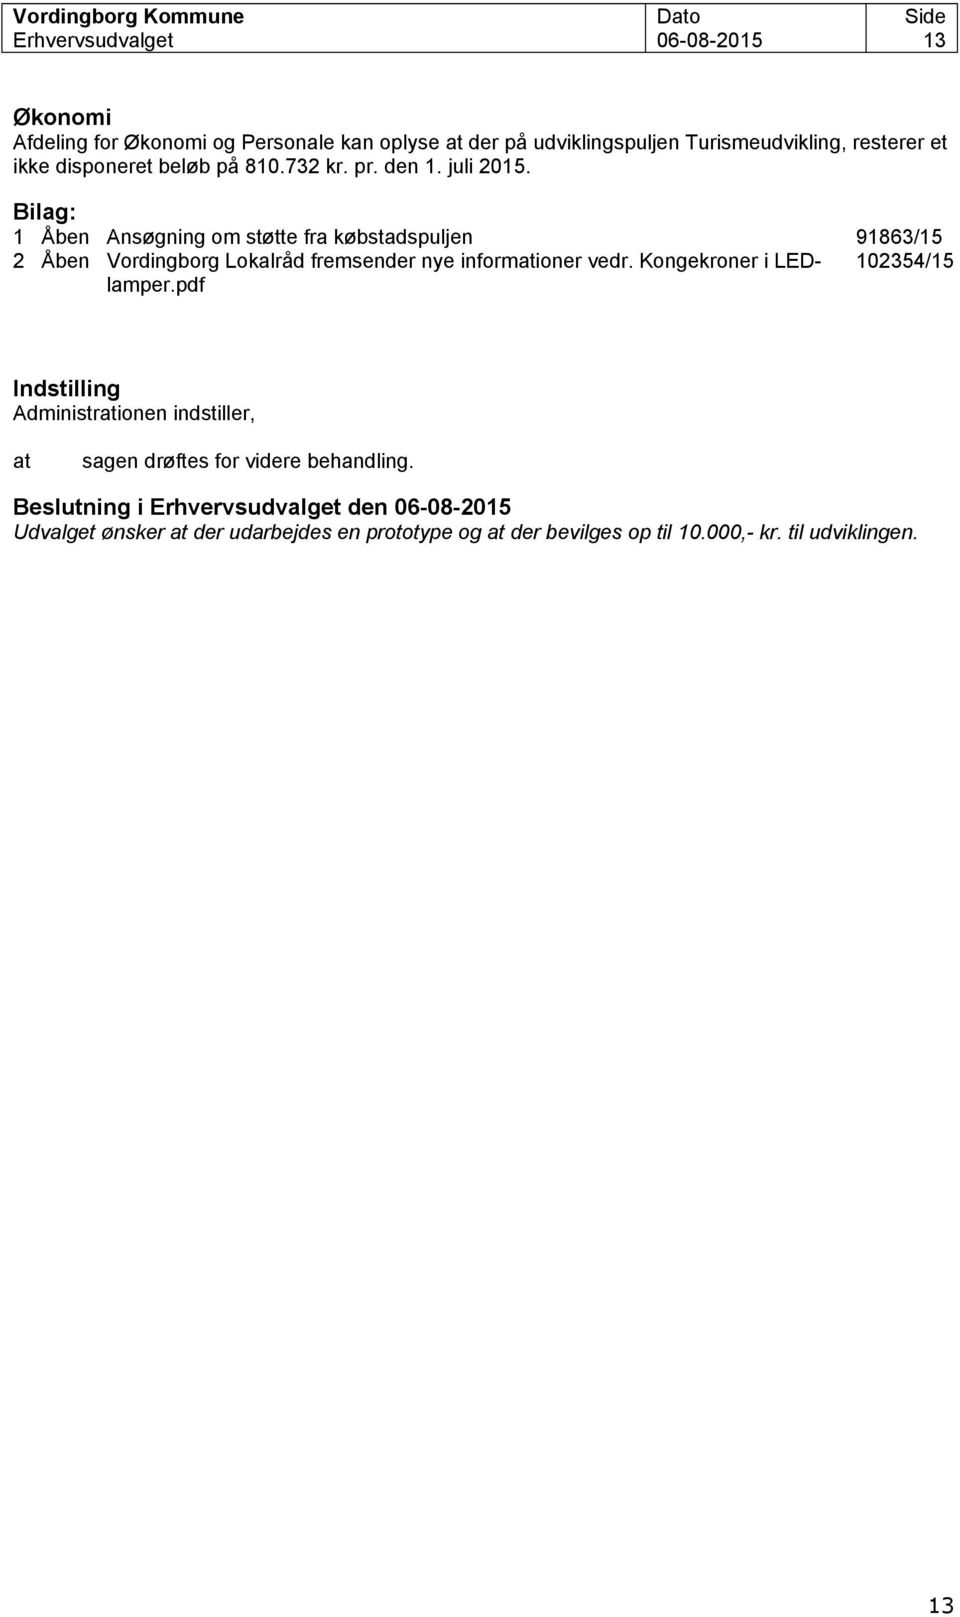 Bilag: 1 Åben Ansøgning om støtte fra købstadspuljen 91863/15 2 Åben Vordingborg Lokalråd fremsender nye informationer vedr. Kongekroner i LEDlamper.